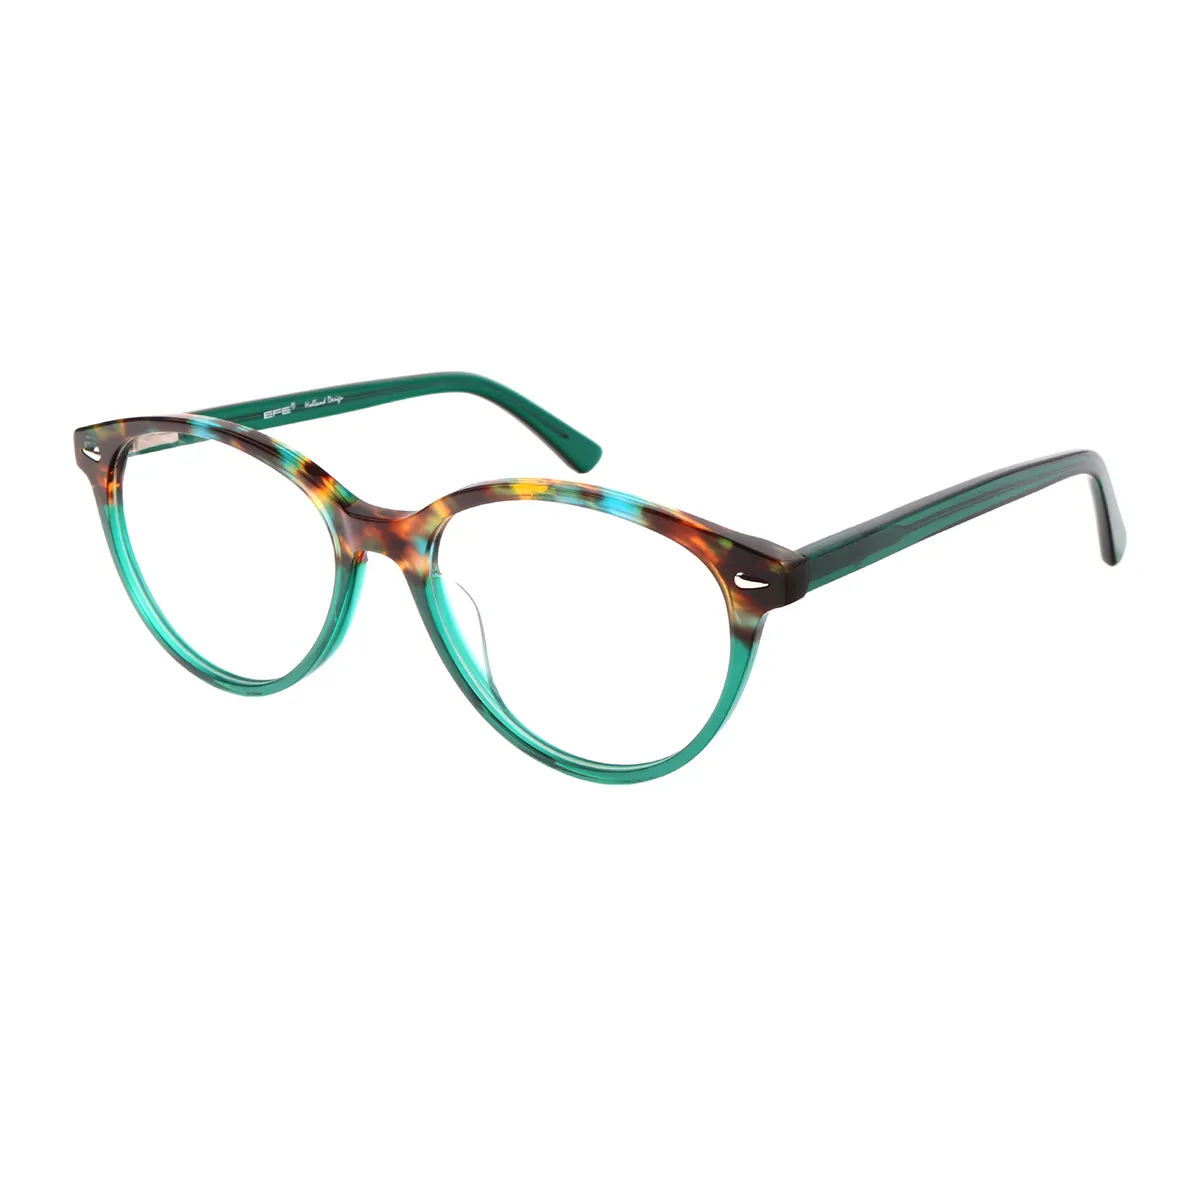 Classic Oval Green Glasses for Men & Women